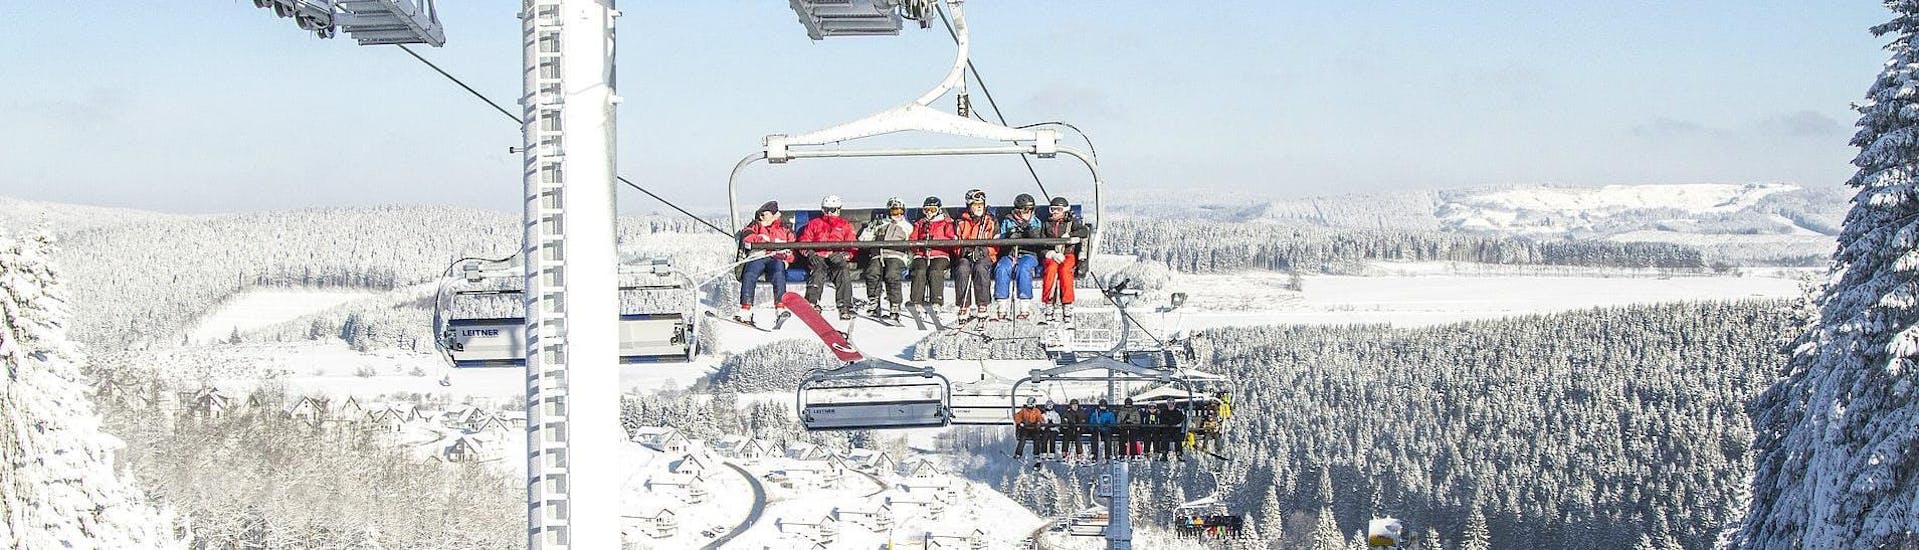 Een groep skiërs neemt een stoeltjeslift naar de top van een berg om deel te nemen aan skiles van Skischule Kahler Asten in het skigebied van Winterberg.